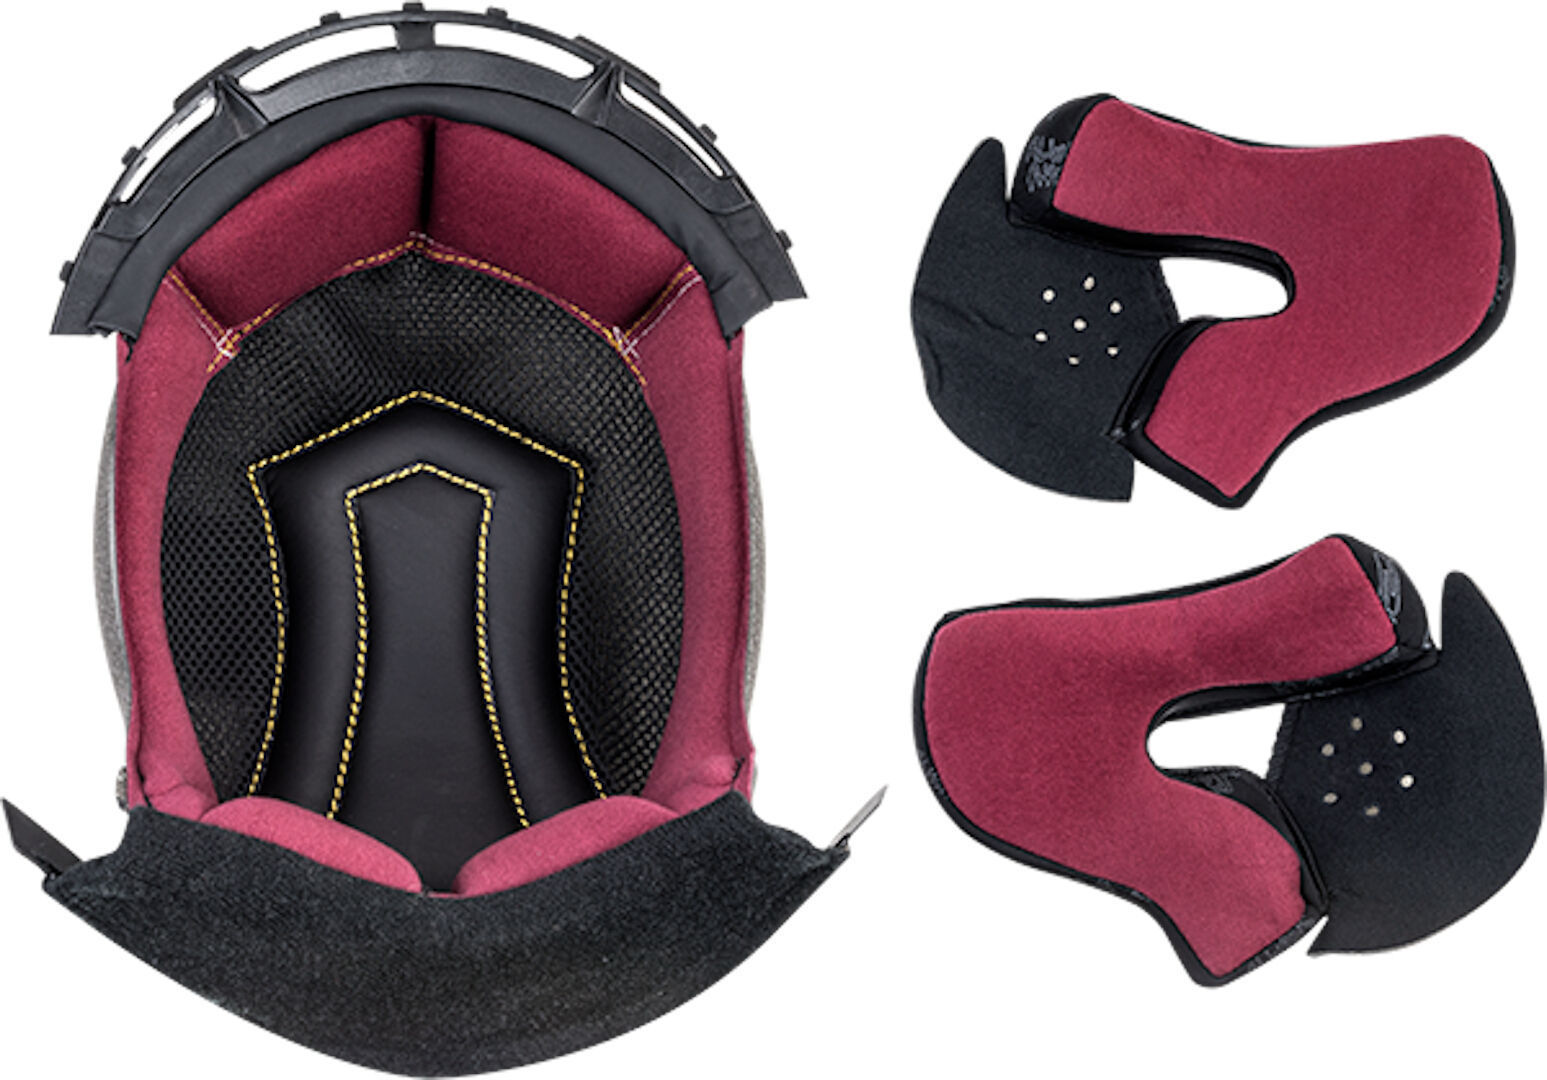 Подкладка LS2 FF313 Vortex внутренняя для шлема внутренняя подкладка для шлема защитная губка буферная набивка для мотоцикла велосипеда безопасный для езды удобный коврик для шлема